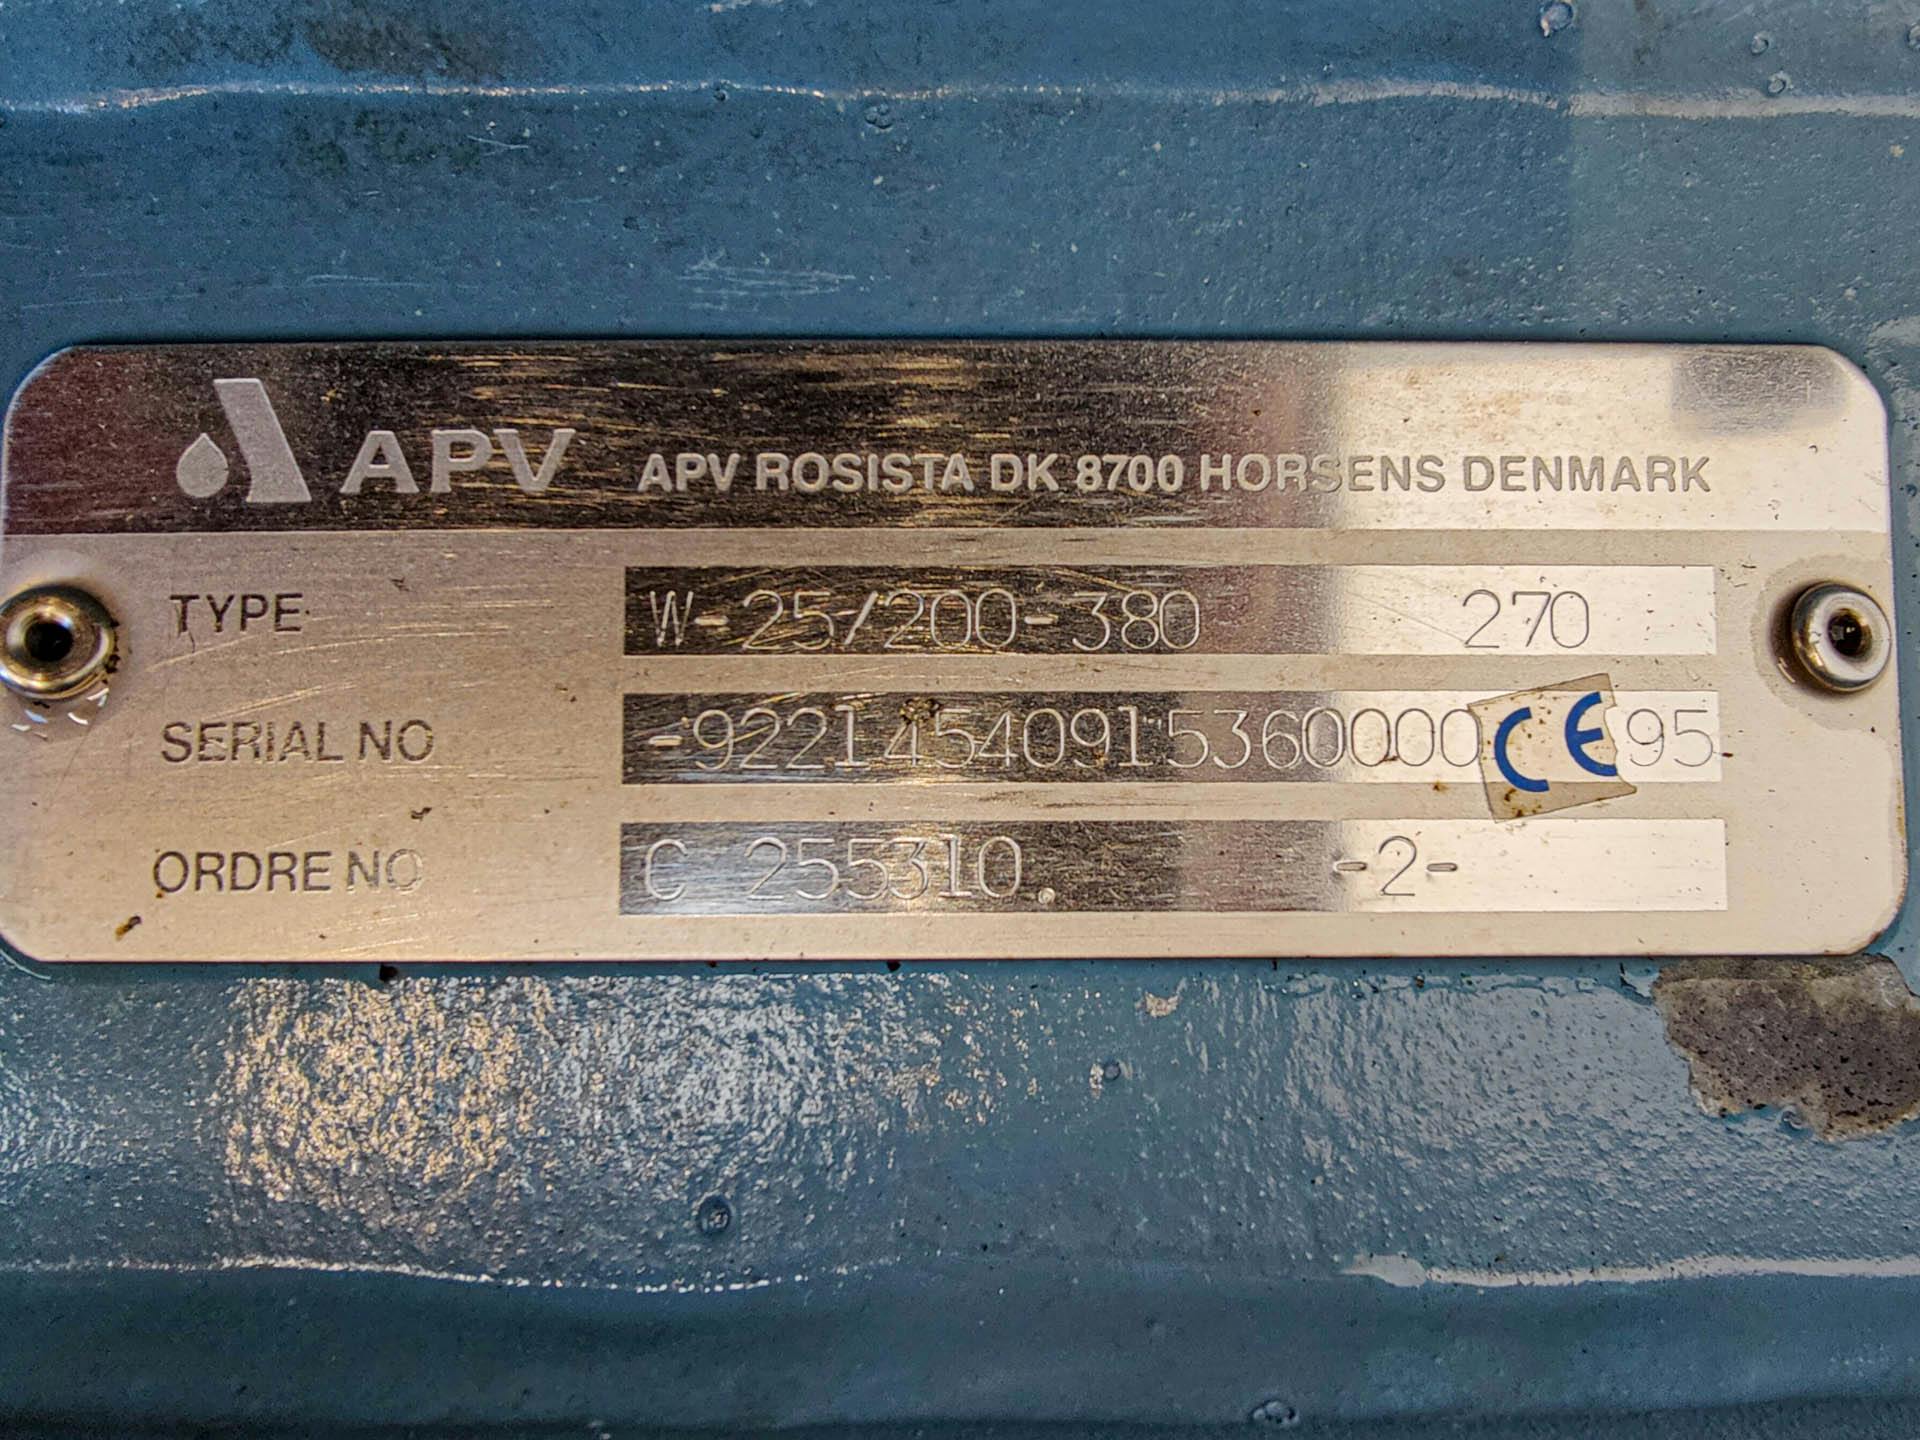 APV Rosista W-25/200-380 - Pompe centrifuge - image 5